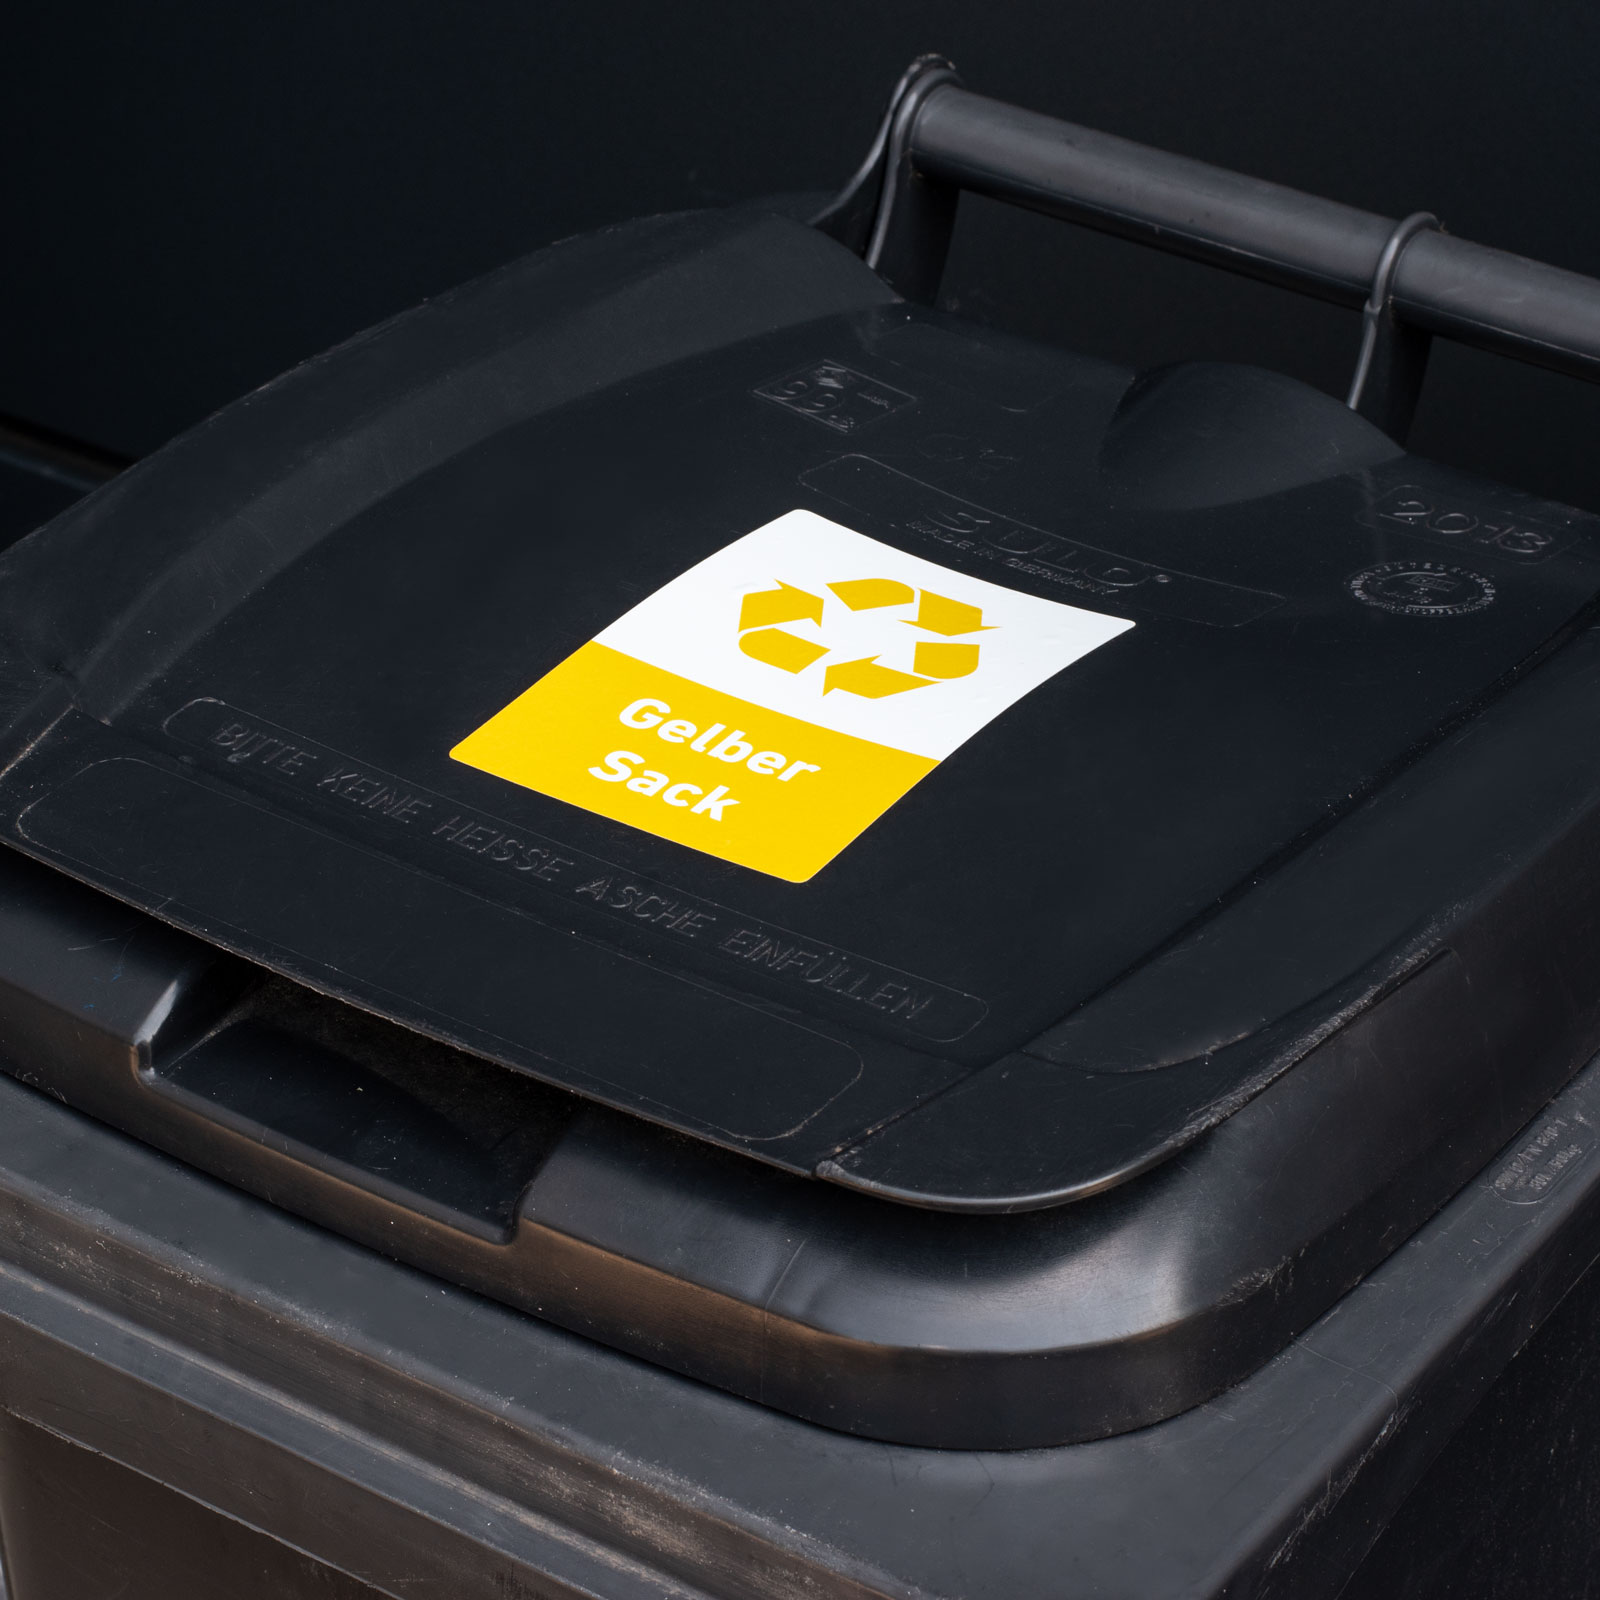 Recycling Aufkleber 8er Set Gelber Sack Mülltonnen Mülleimer